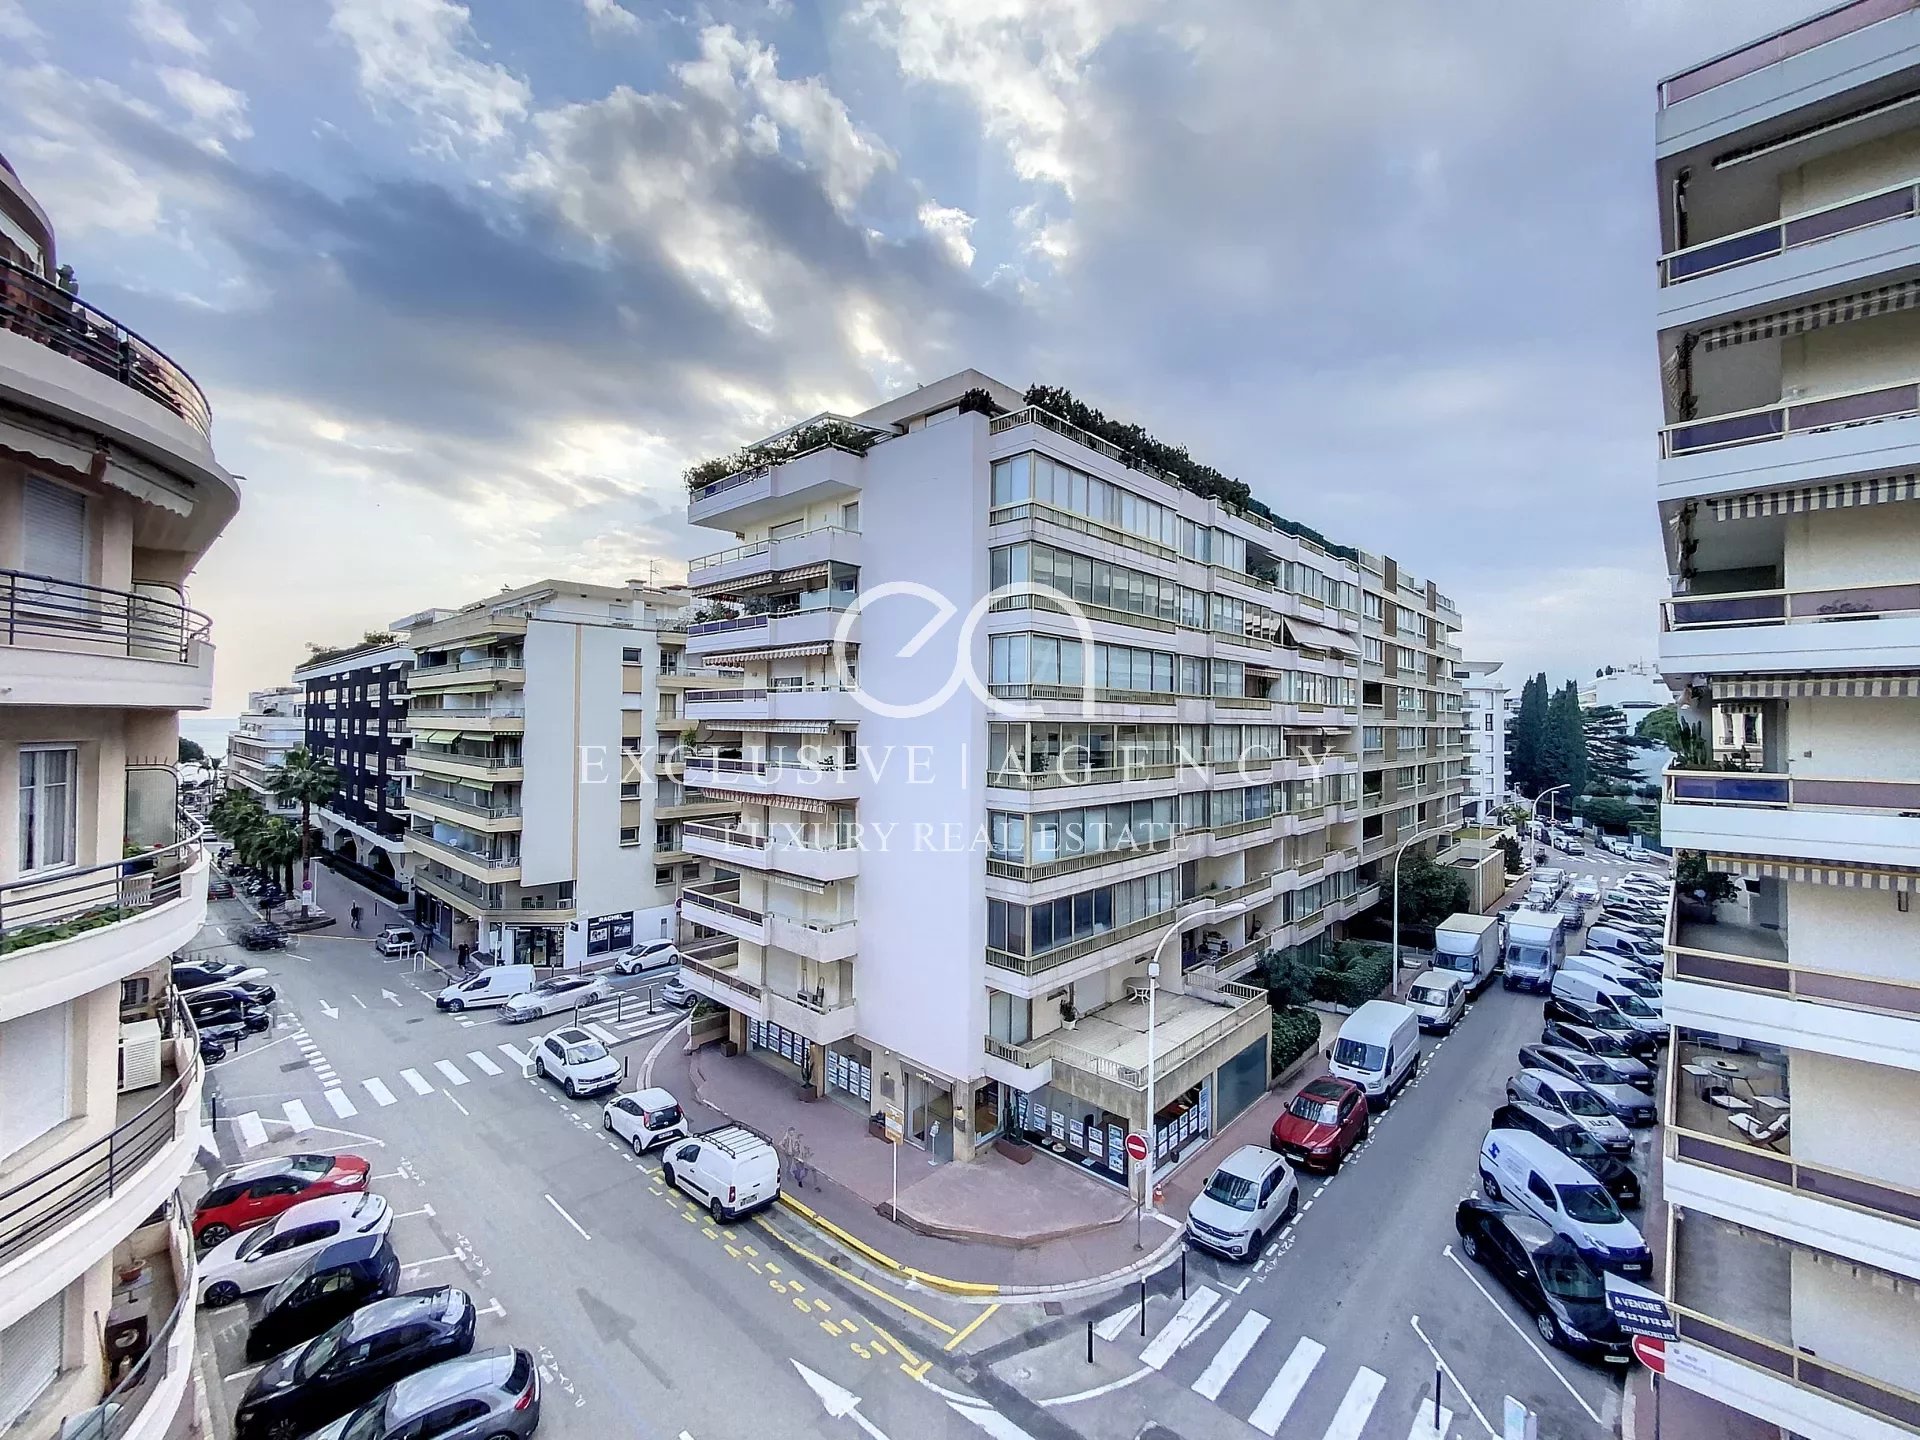 Location Cannes Centre 3 pièces meublé 85m² à 200m de la Croisette